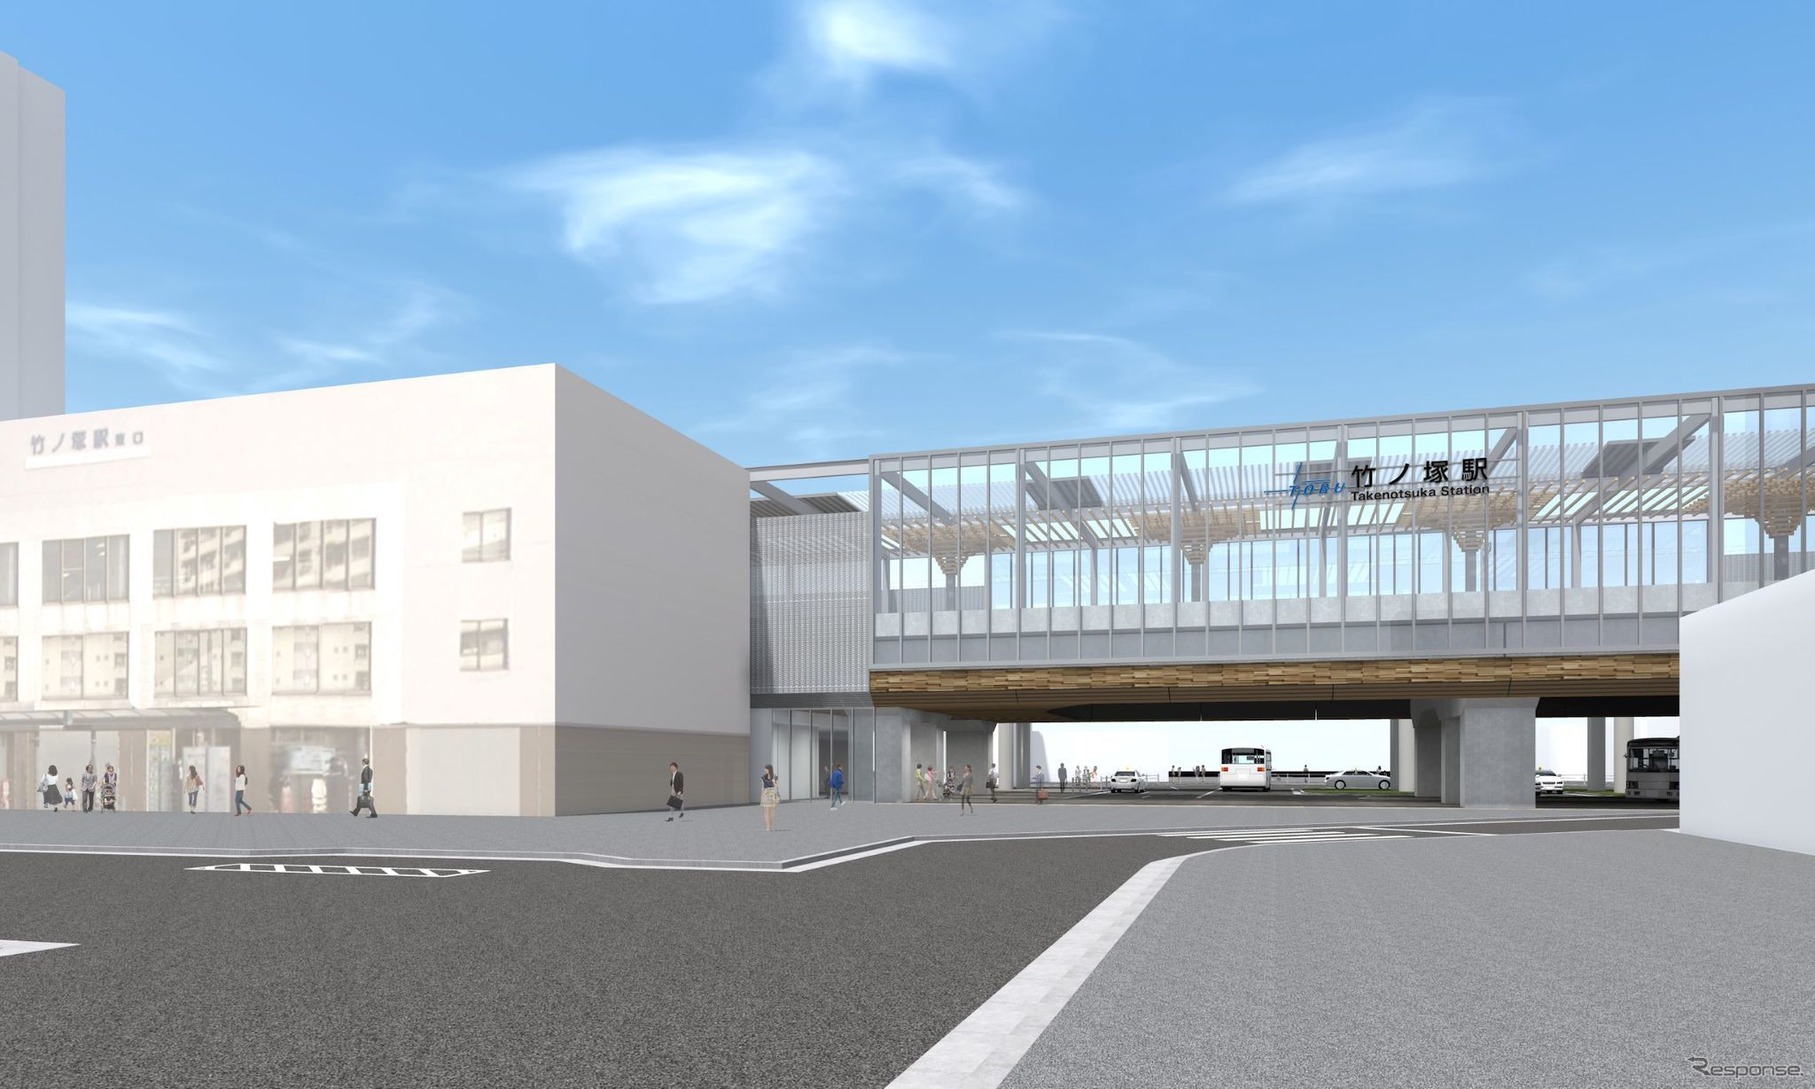 2021年度中の高架化が予定されている竹ノ塚駅のイメージ。竹ノ塚駅を挟む東武スカイツリーライン西新井～谷塚間では、複々線の完全高架化により2カ所の踏切が廃止される。